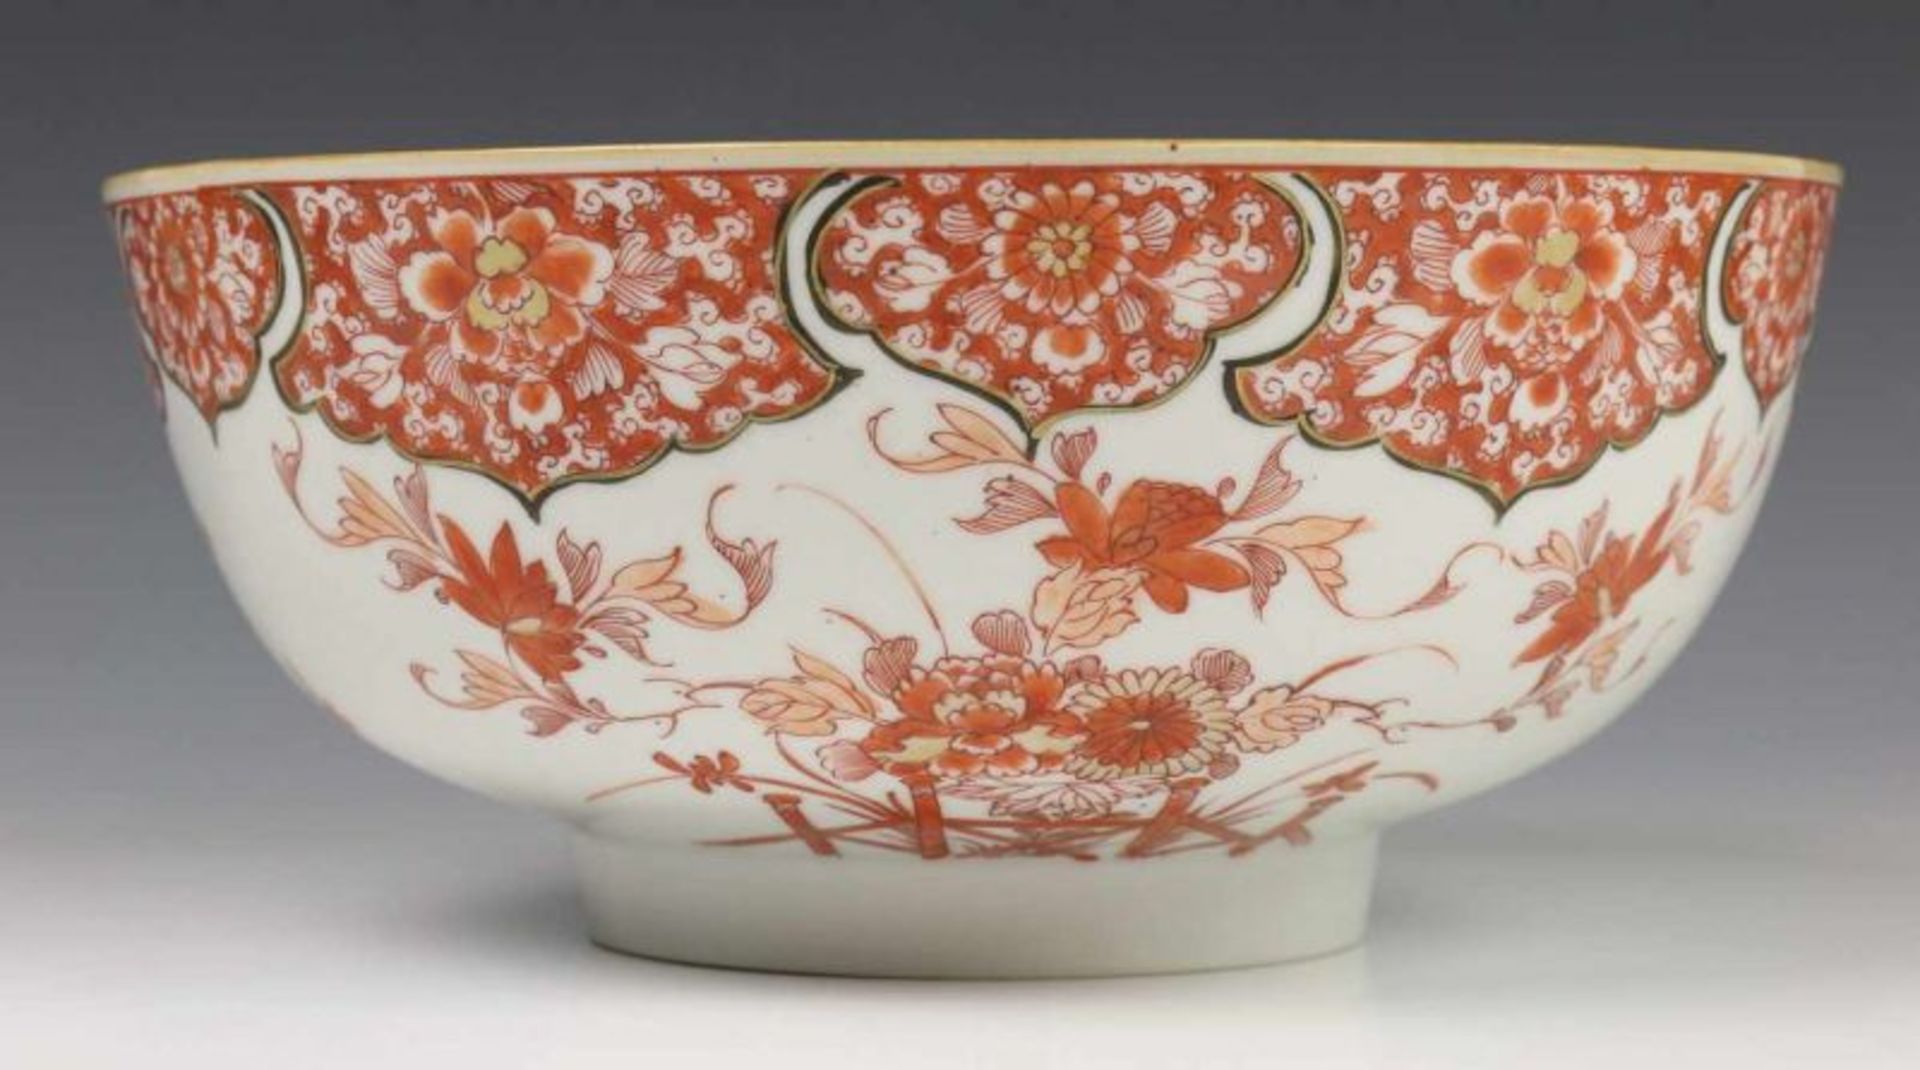 China, porseleinen kom, 18e eeuw, met rood-verguld decor van goudvissen, de rand met cartouches (